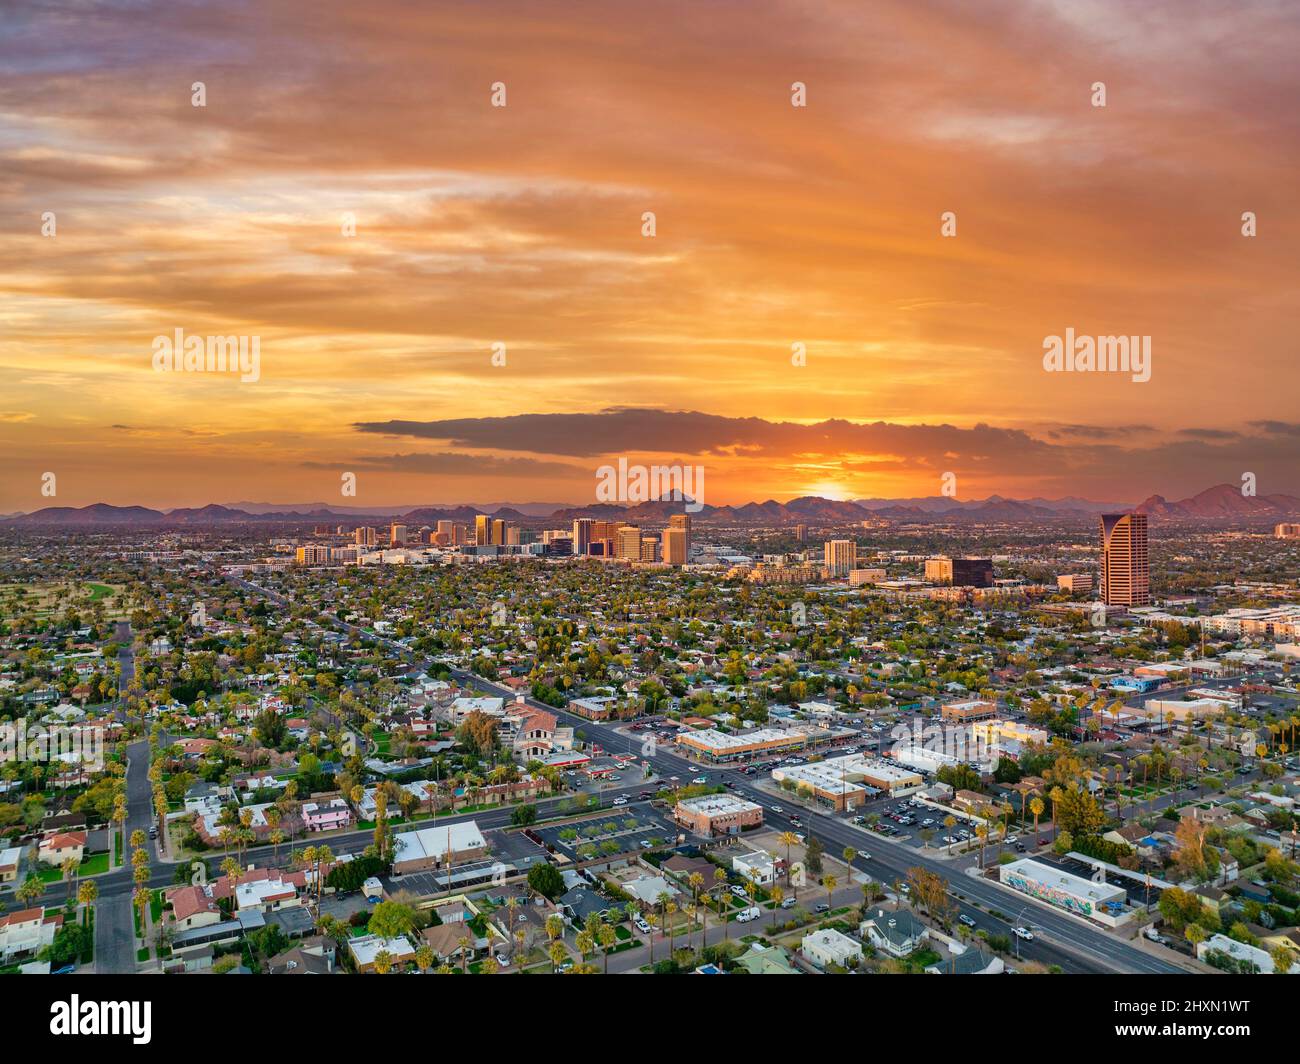 38 fotos de stock e banco de imagens de Downtown Glendale Az - Getty Images